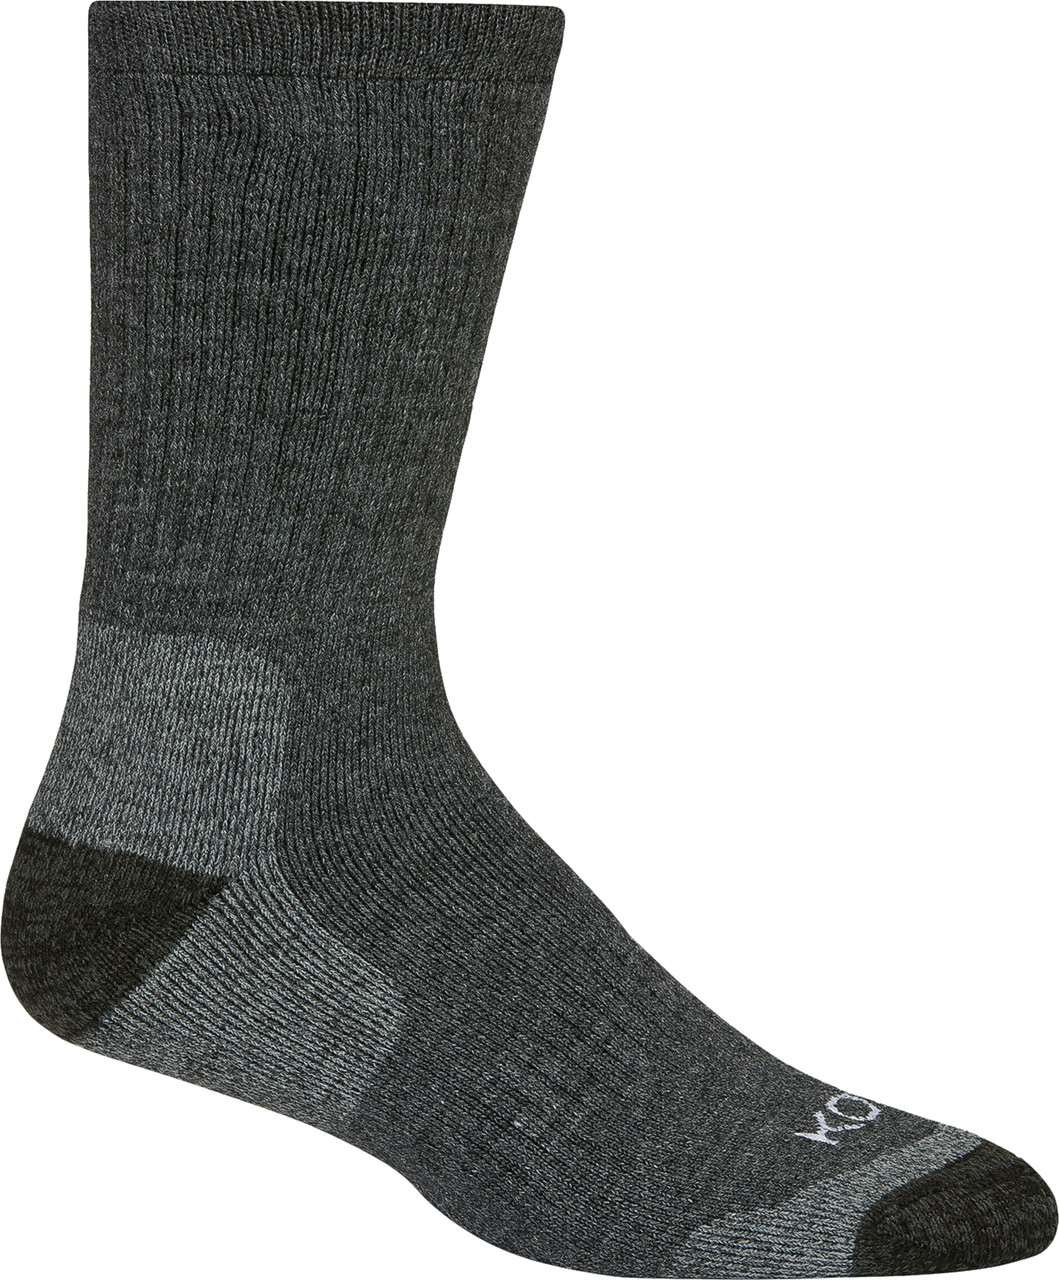 The Alpaca Adult Socks Asphalt